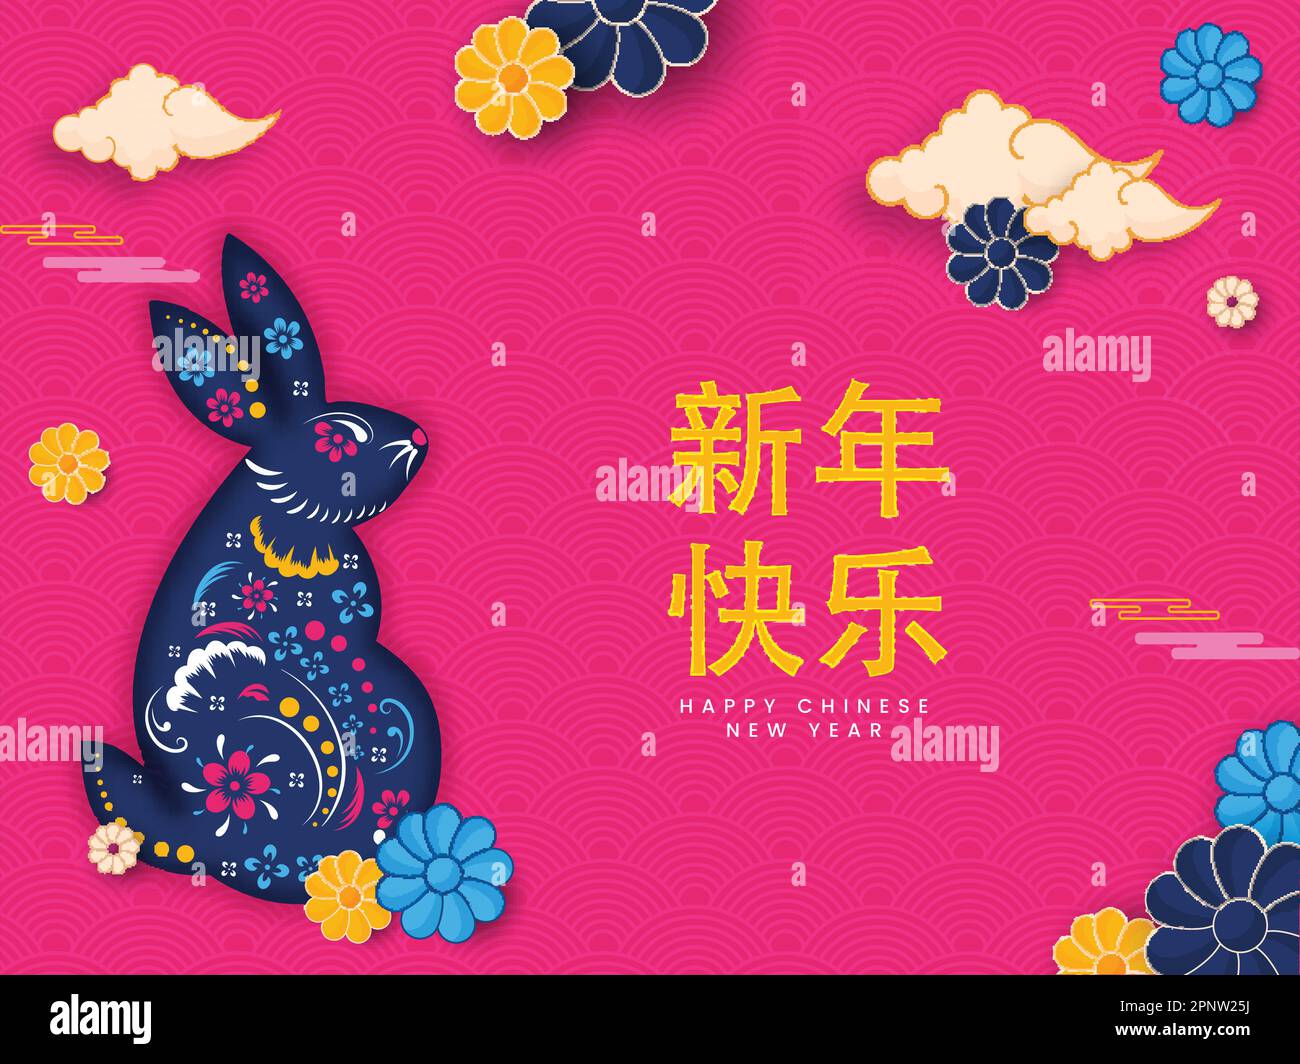 Frohes Neues Jahr Text In Chinesischer Sprache Mit Rabbit Zodiac Schild, Blumen, Wolken Dekoriert Auf Rosafarbenem Halbkreismuster Hintergrund. Stock Vektor